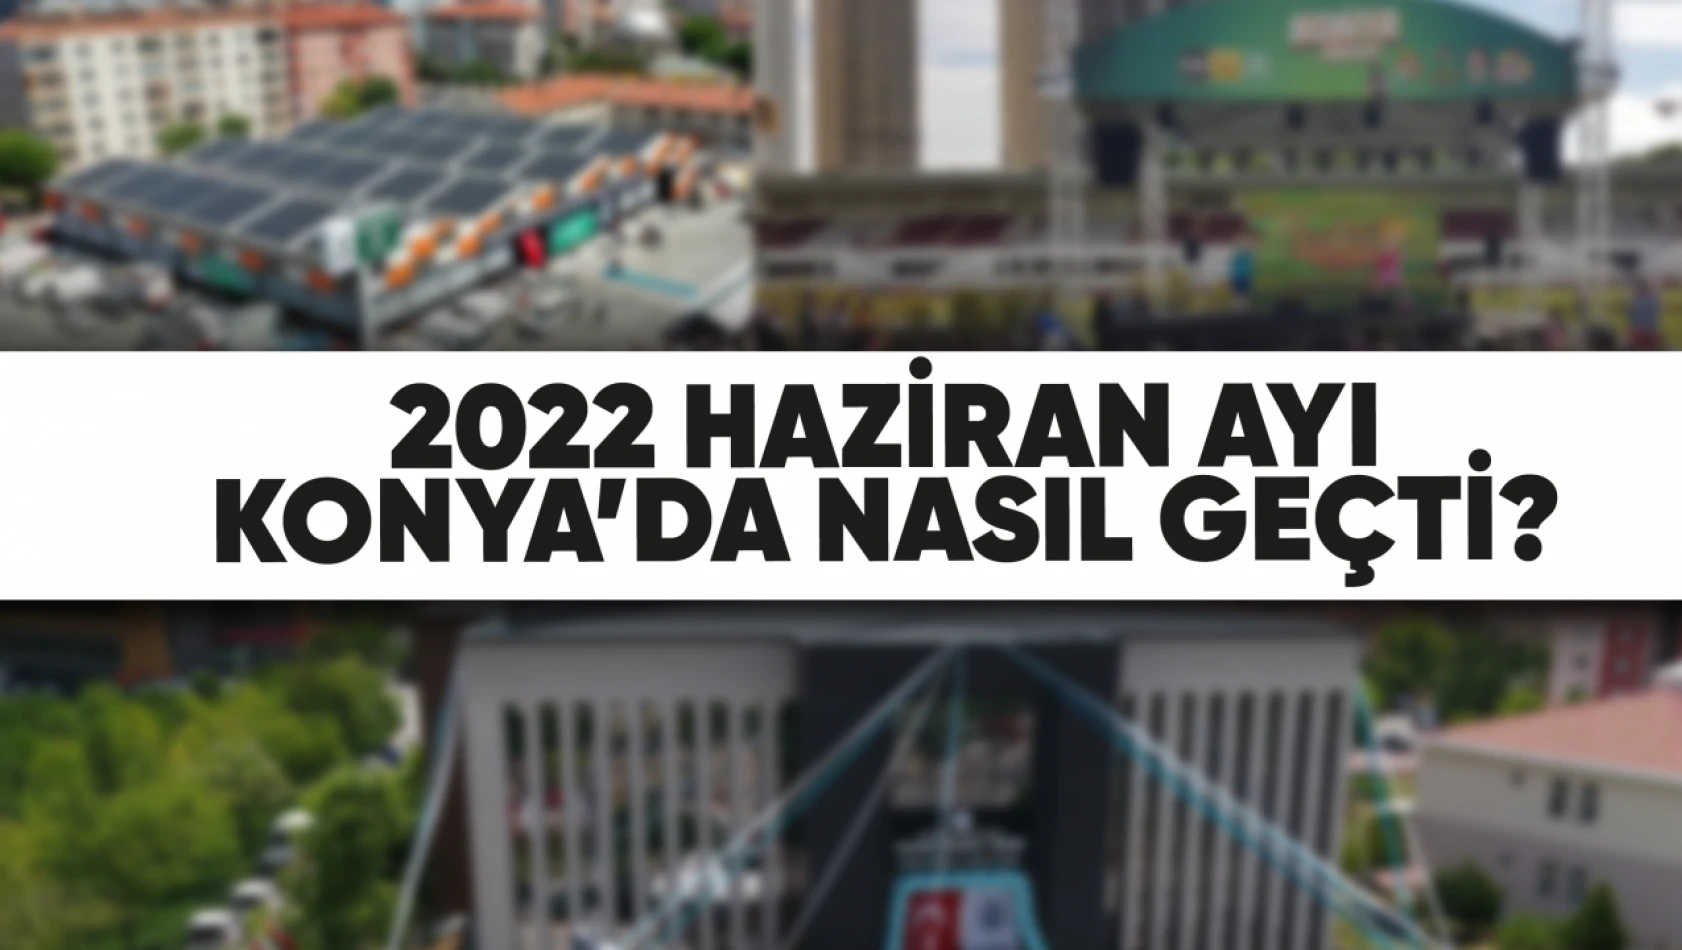 Haziran 2022'de Konya'da Neler Oldu?